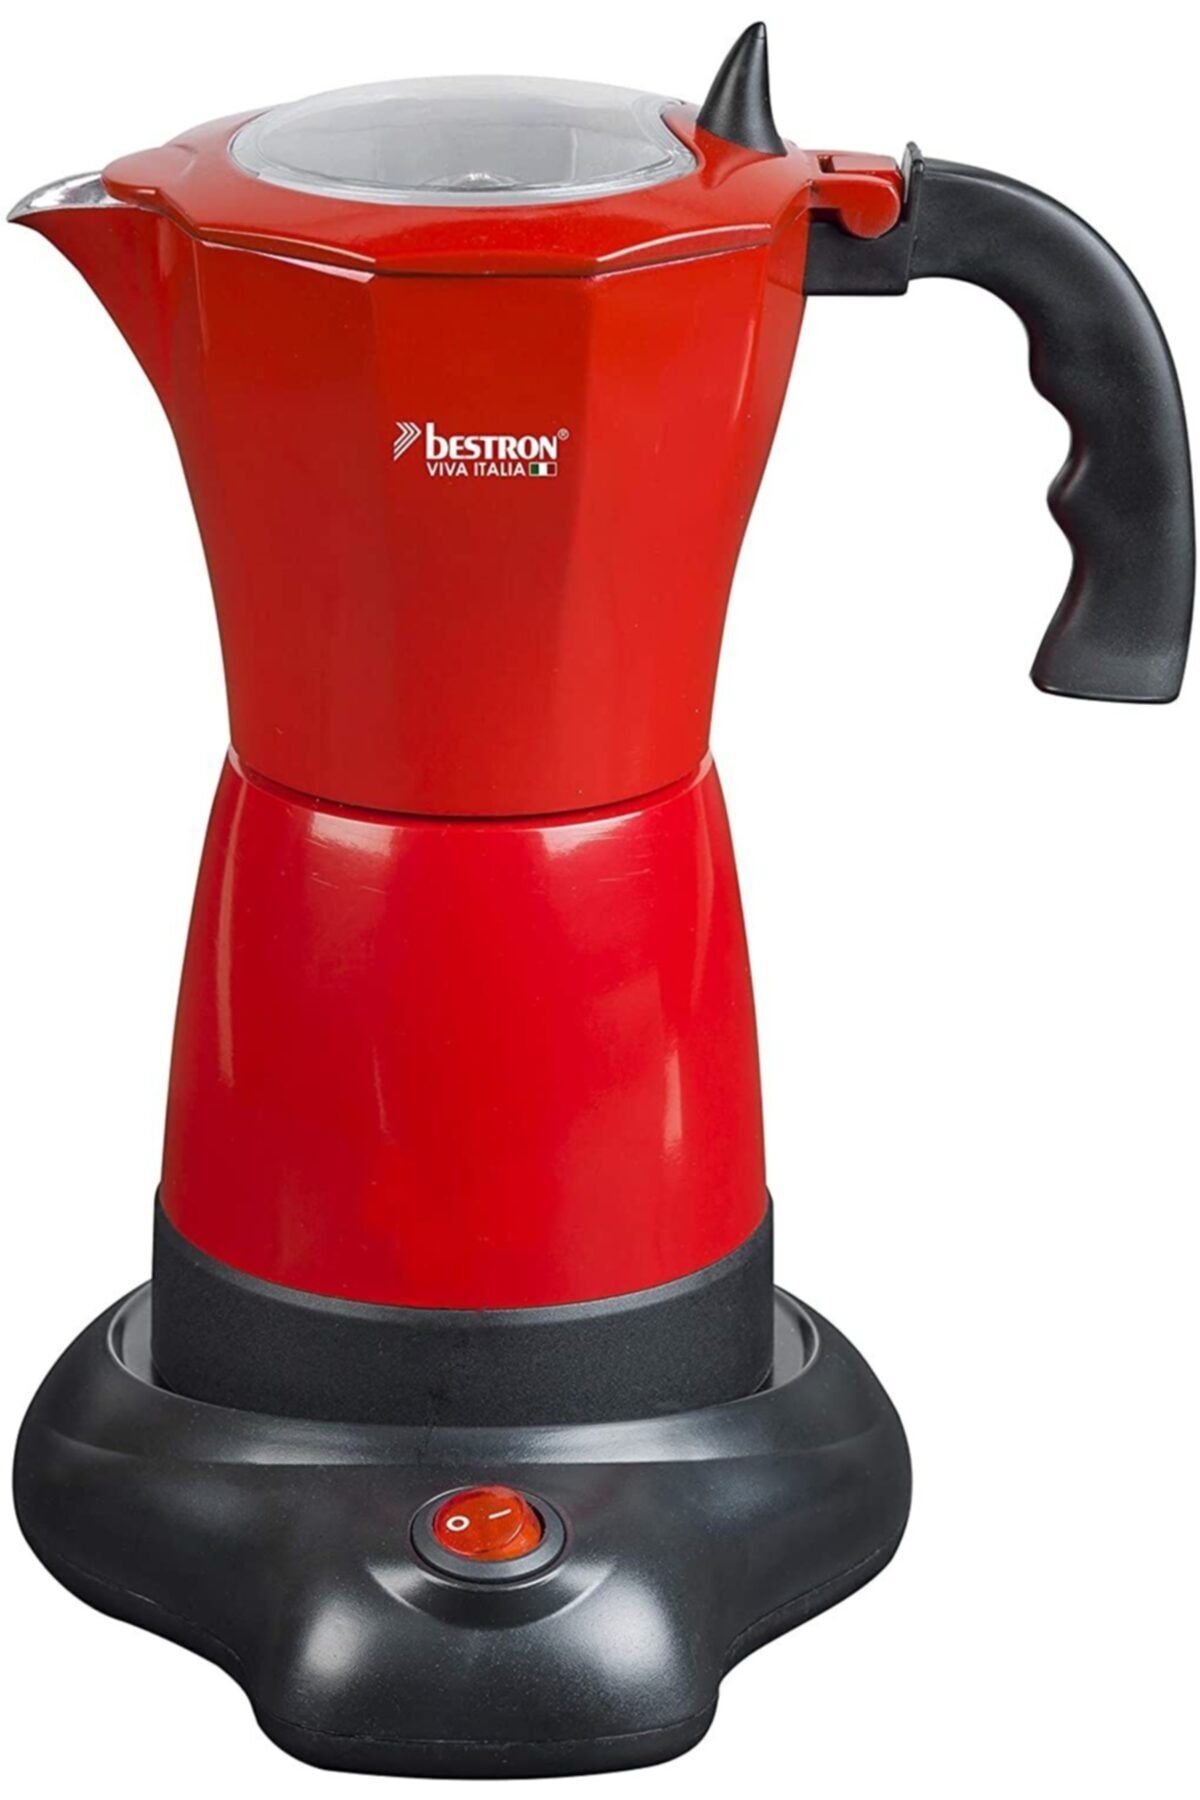 bestron Aes480 Espresso Makinesi, 480 W, Kırmızı